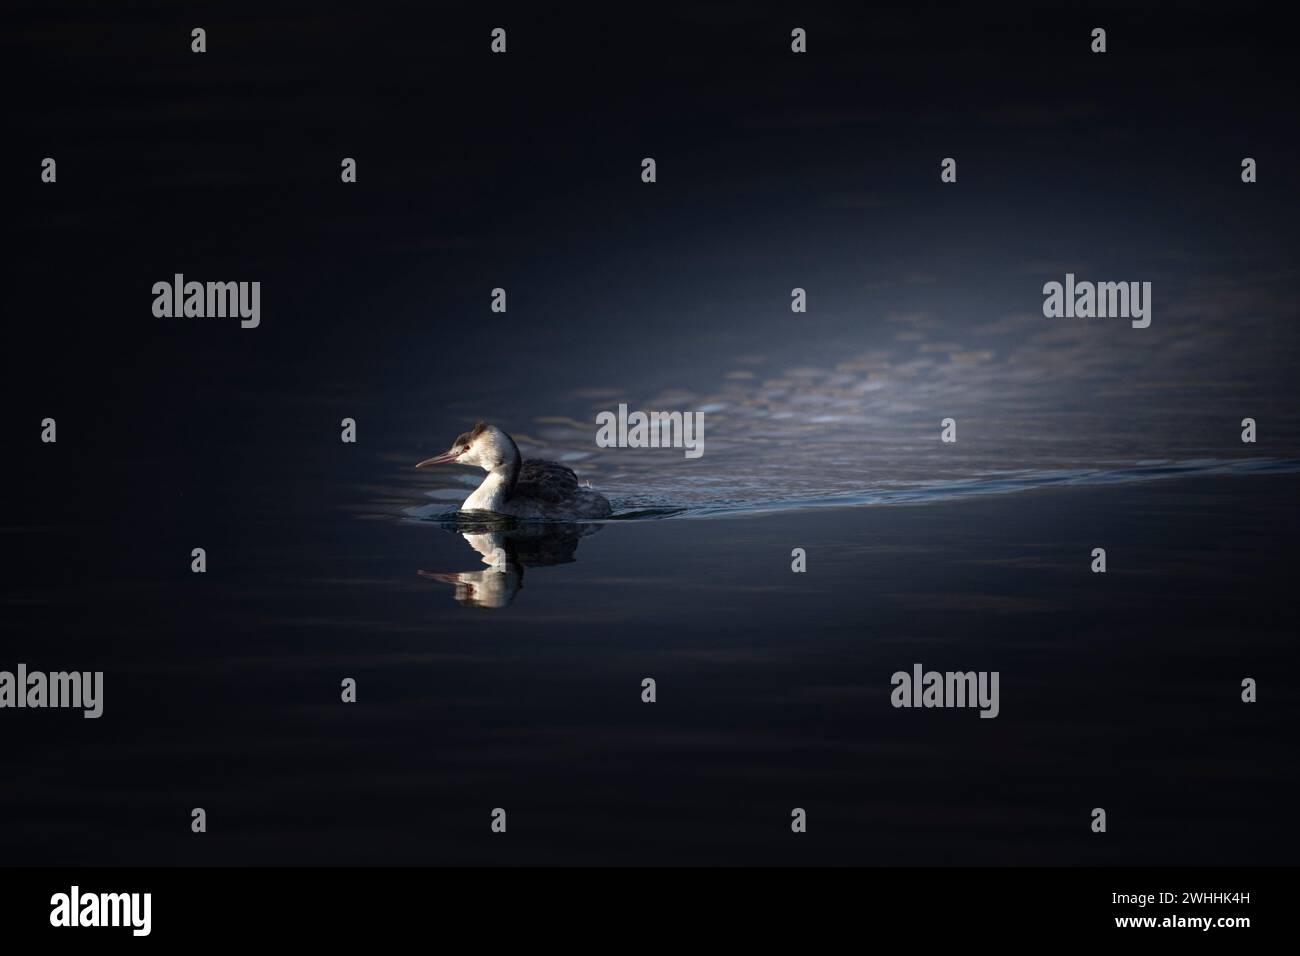 Fotografia scatta sul lago di Avigliana, ho aspettato che lo Svasso entrassenel taglio di luce Stockfoto